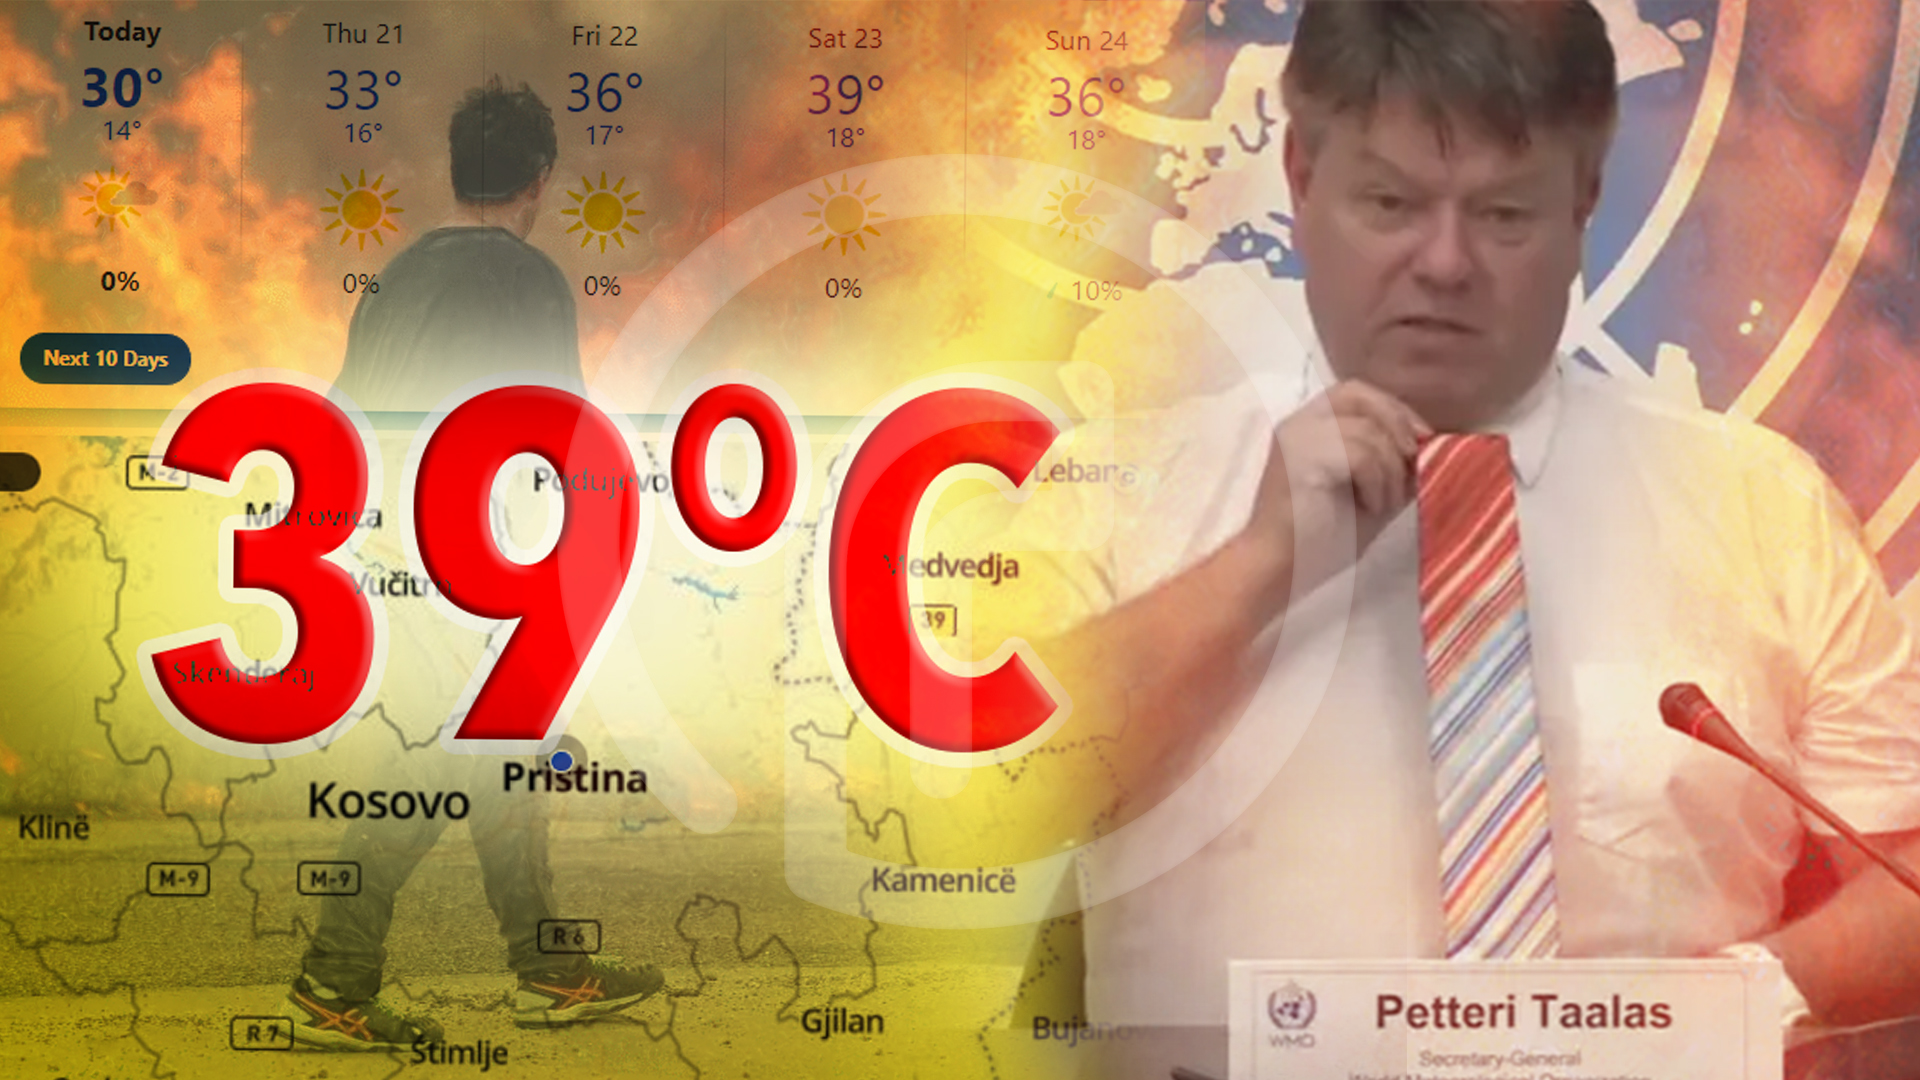 Kujdes: Po vijnë temperaturat përvëluese, të shtunën deri në 39 gradë Celsius sipas PW